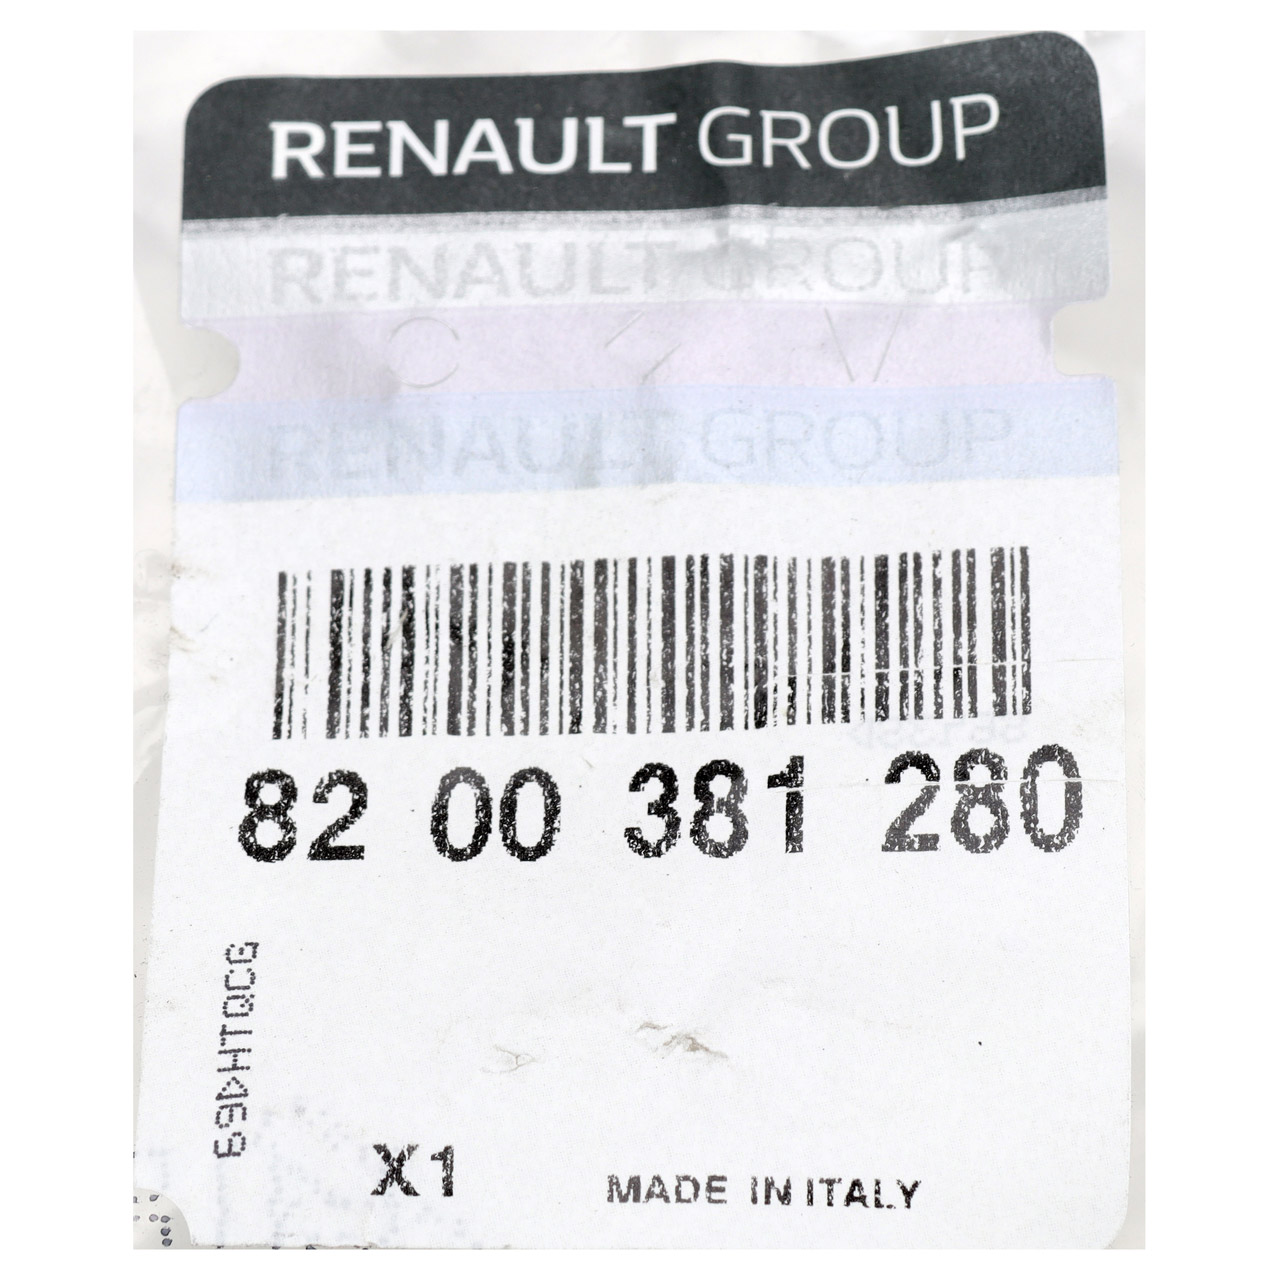 ORIGINAL RENAULT Batteriekabel Adapterleitung für Pluspol Megane 2 1.4 1.6 2.0 8200381280